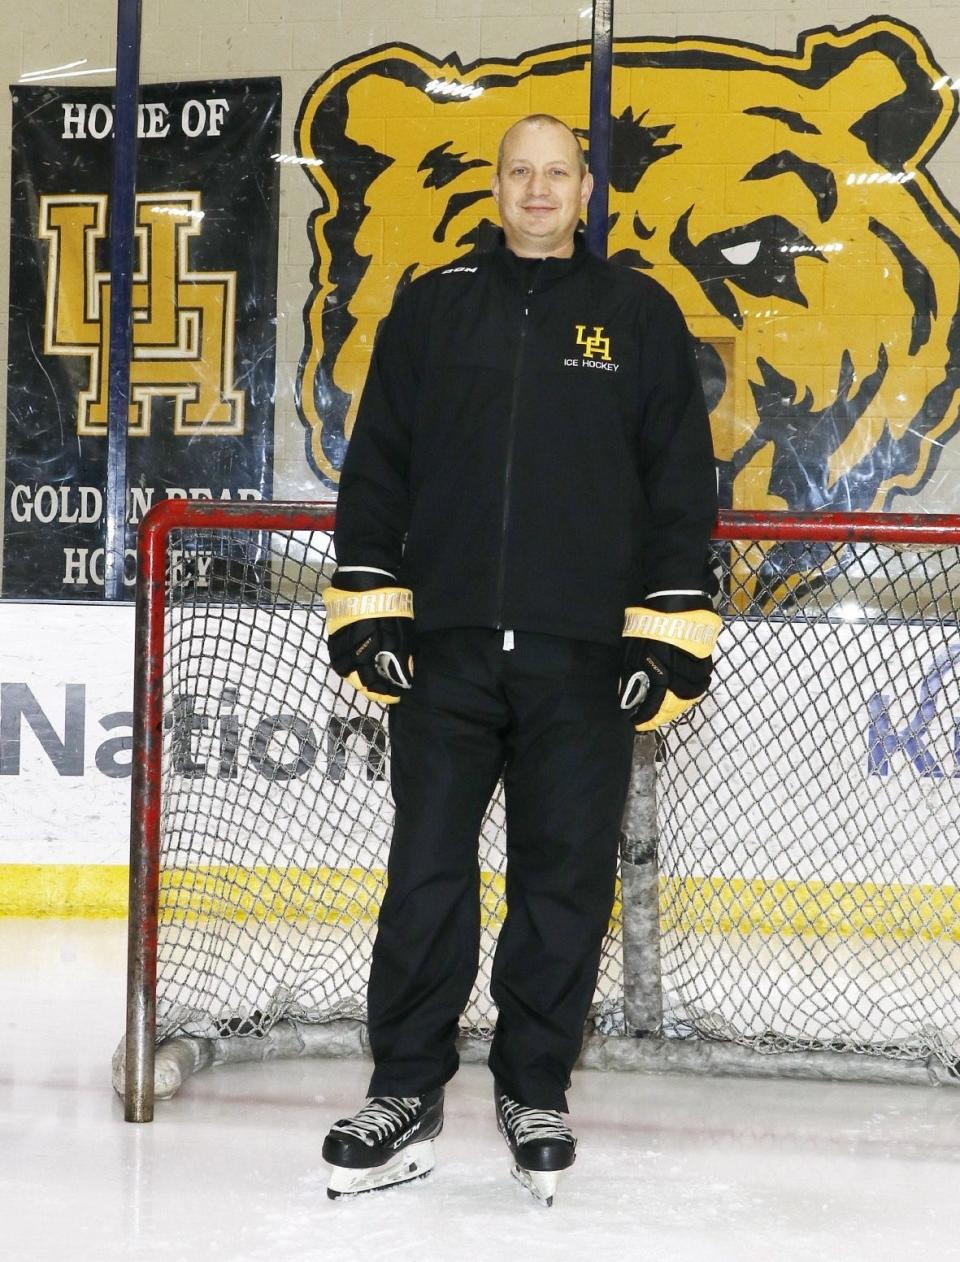 Craig Hagkull has been named Upper Arlington hockey coach, pending school board approval.